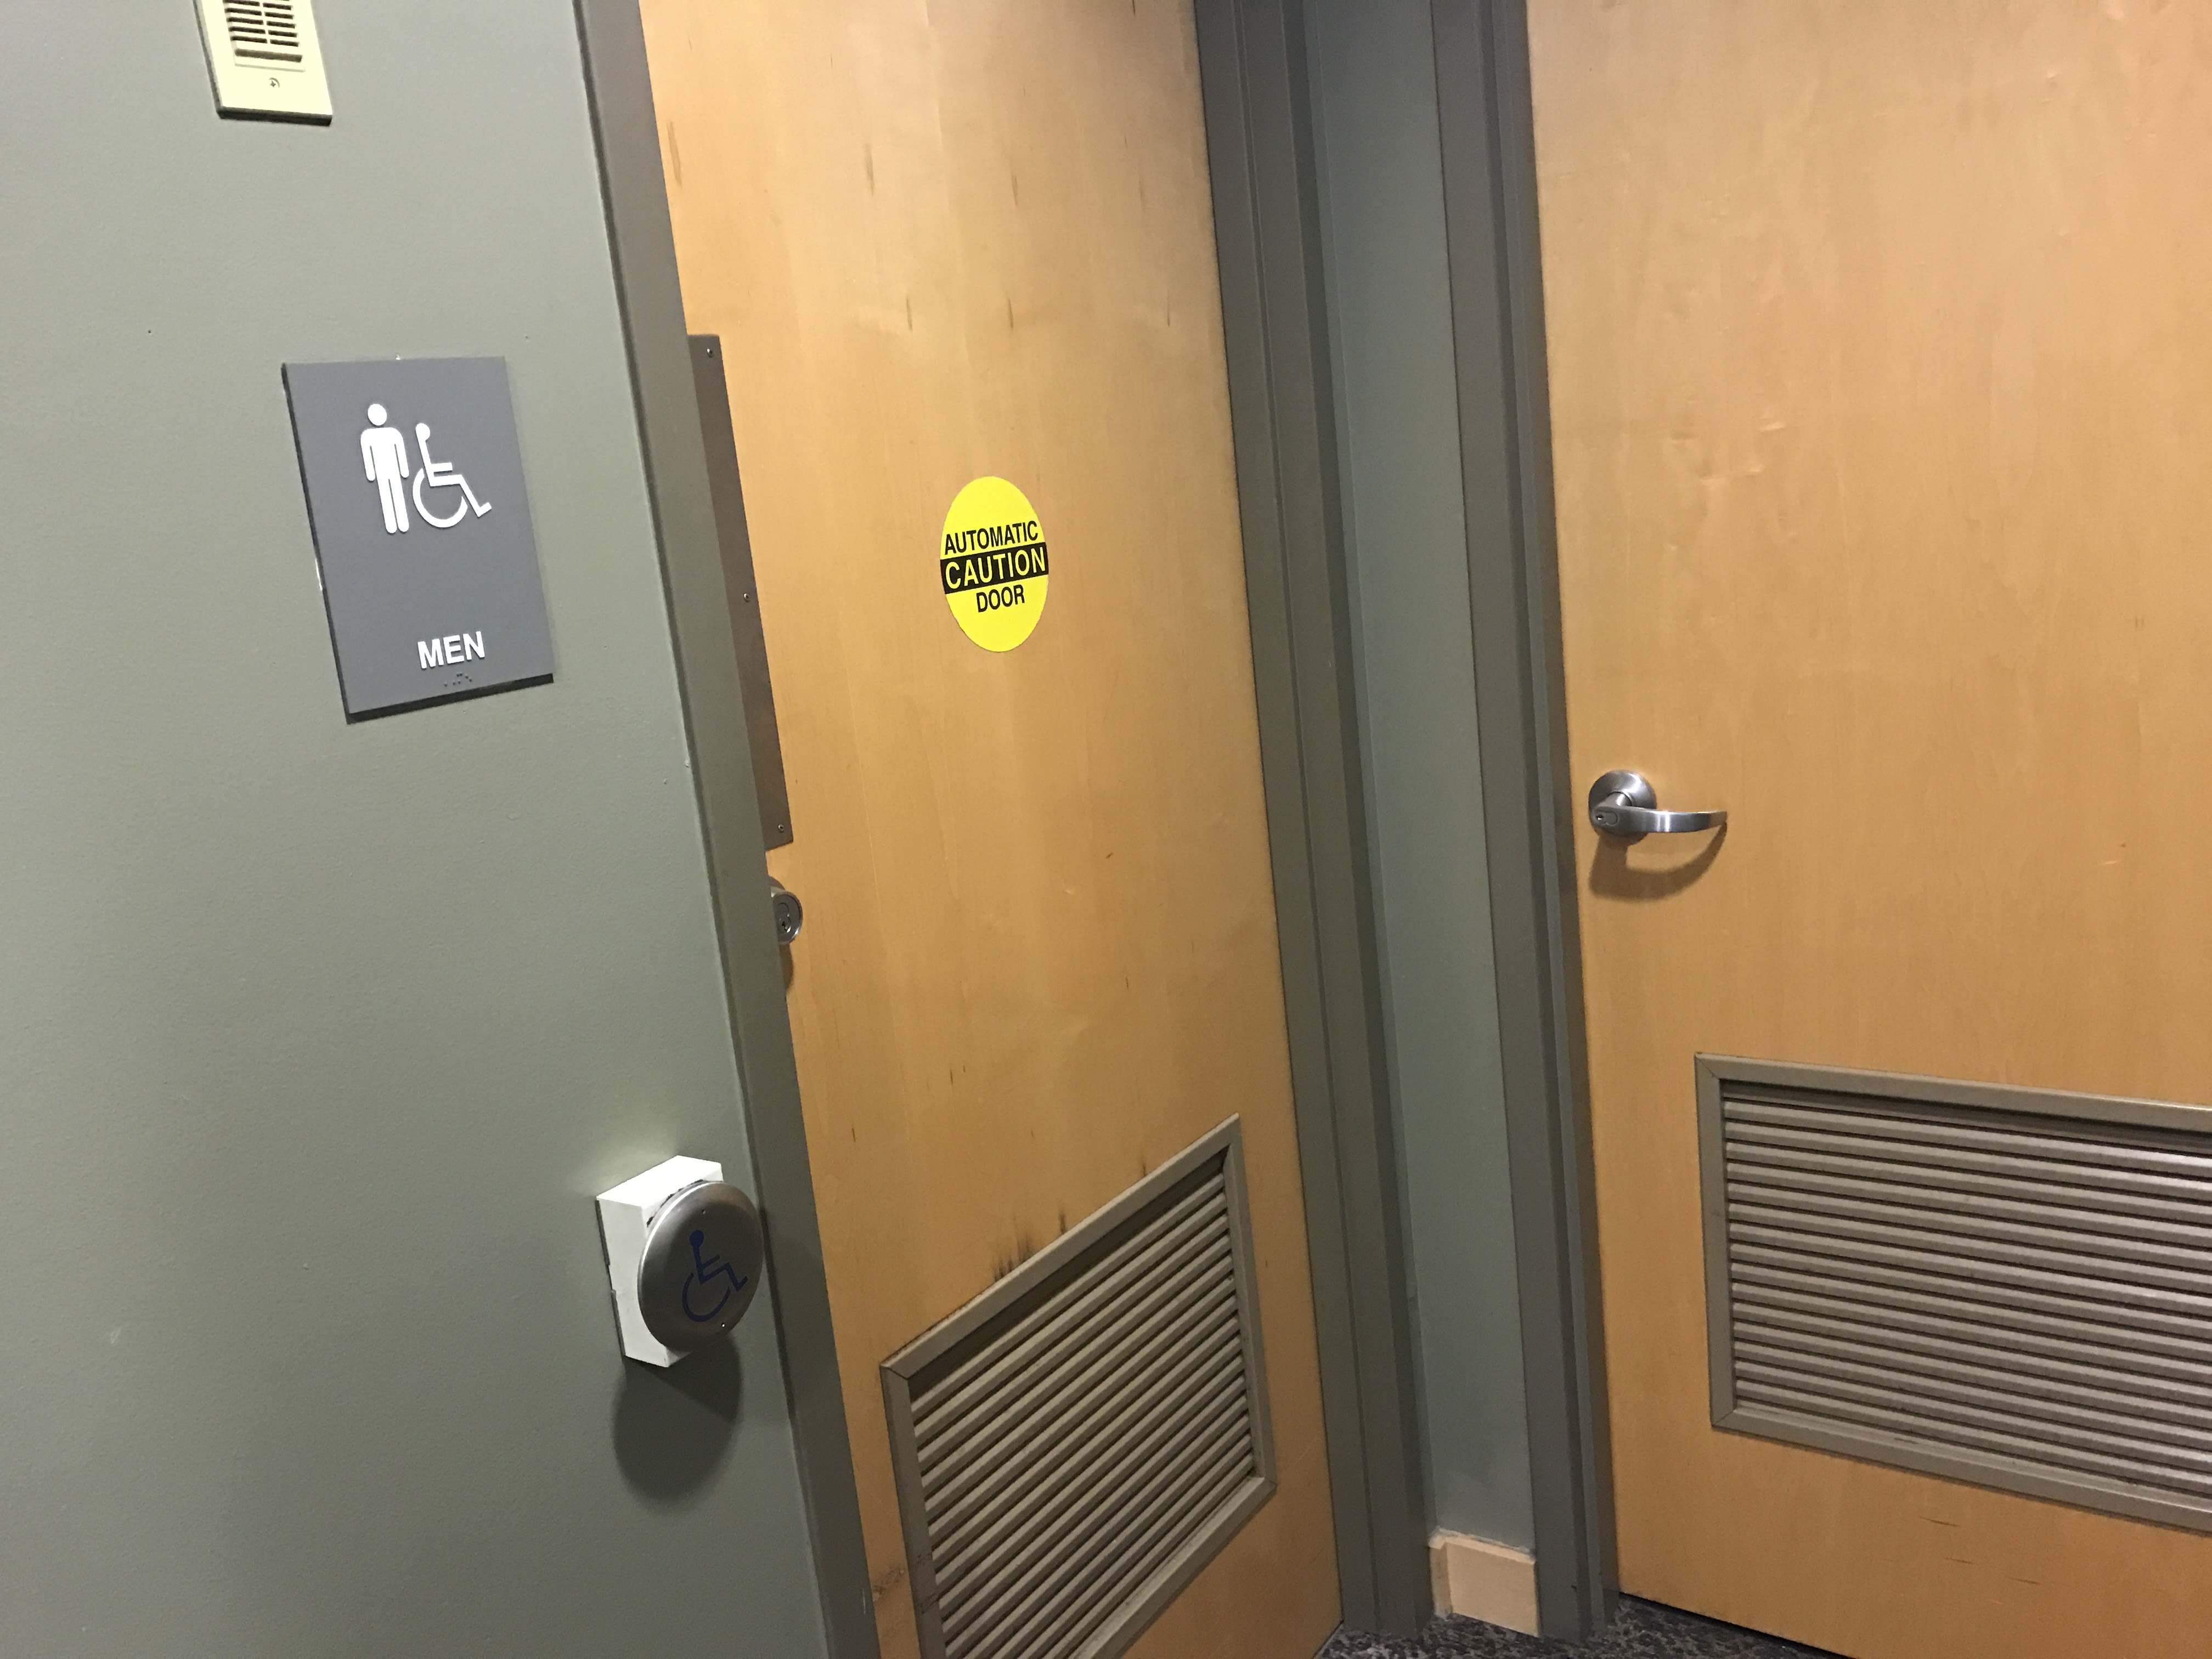 Mens restroom door with accessible door opener.